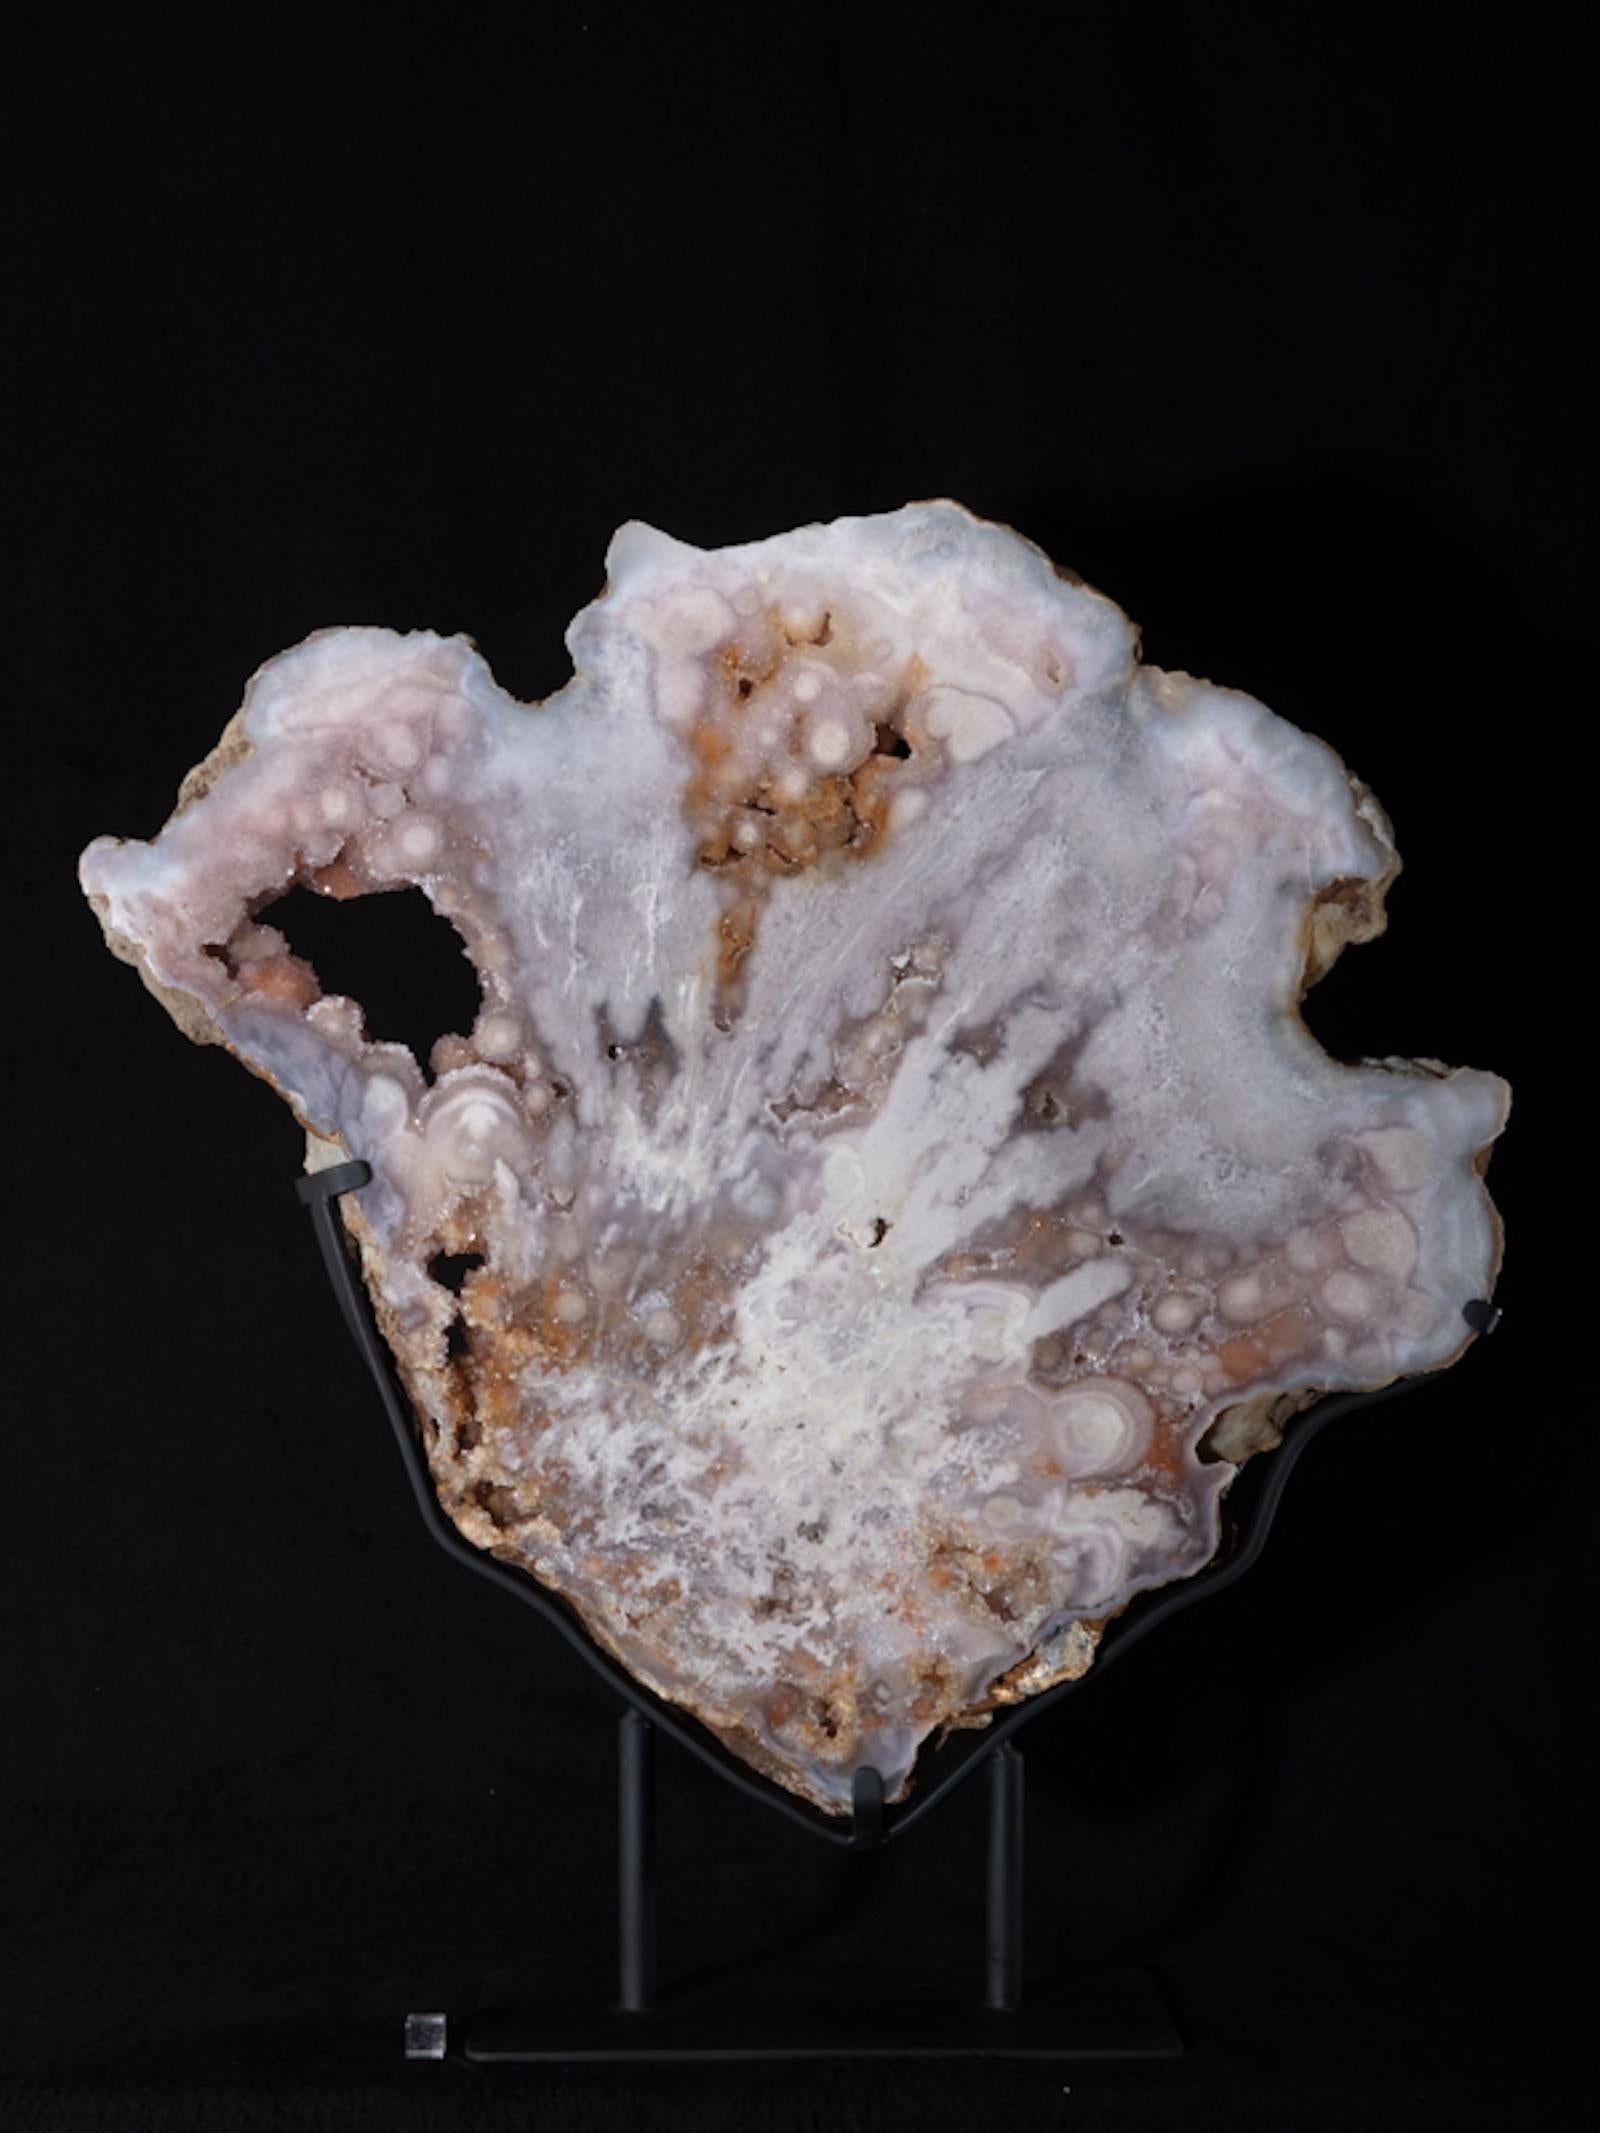 L'améthyste est un quartz contenant des traces d'oxyde de manganèse qui sont responsables de la couleur violette. L'améthyste se trouve généralement dans les cavités de la roche volcanique et est également présente dans les couloirs de minerai. Le